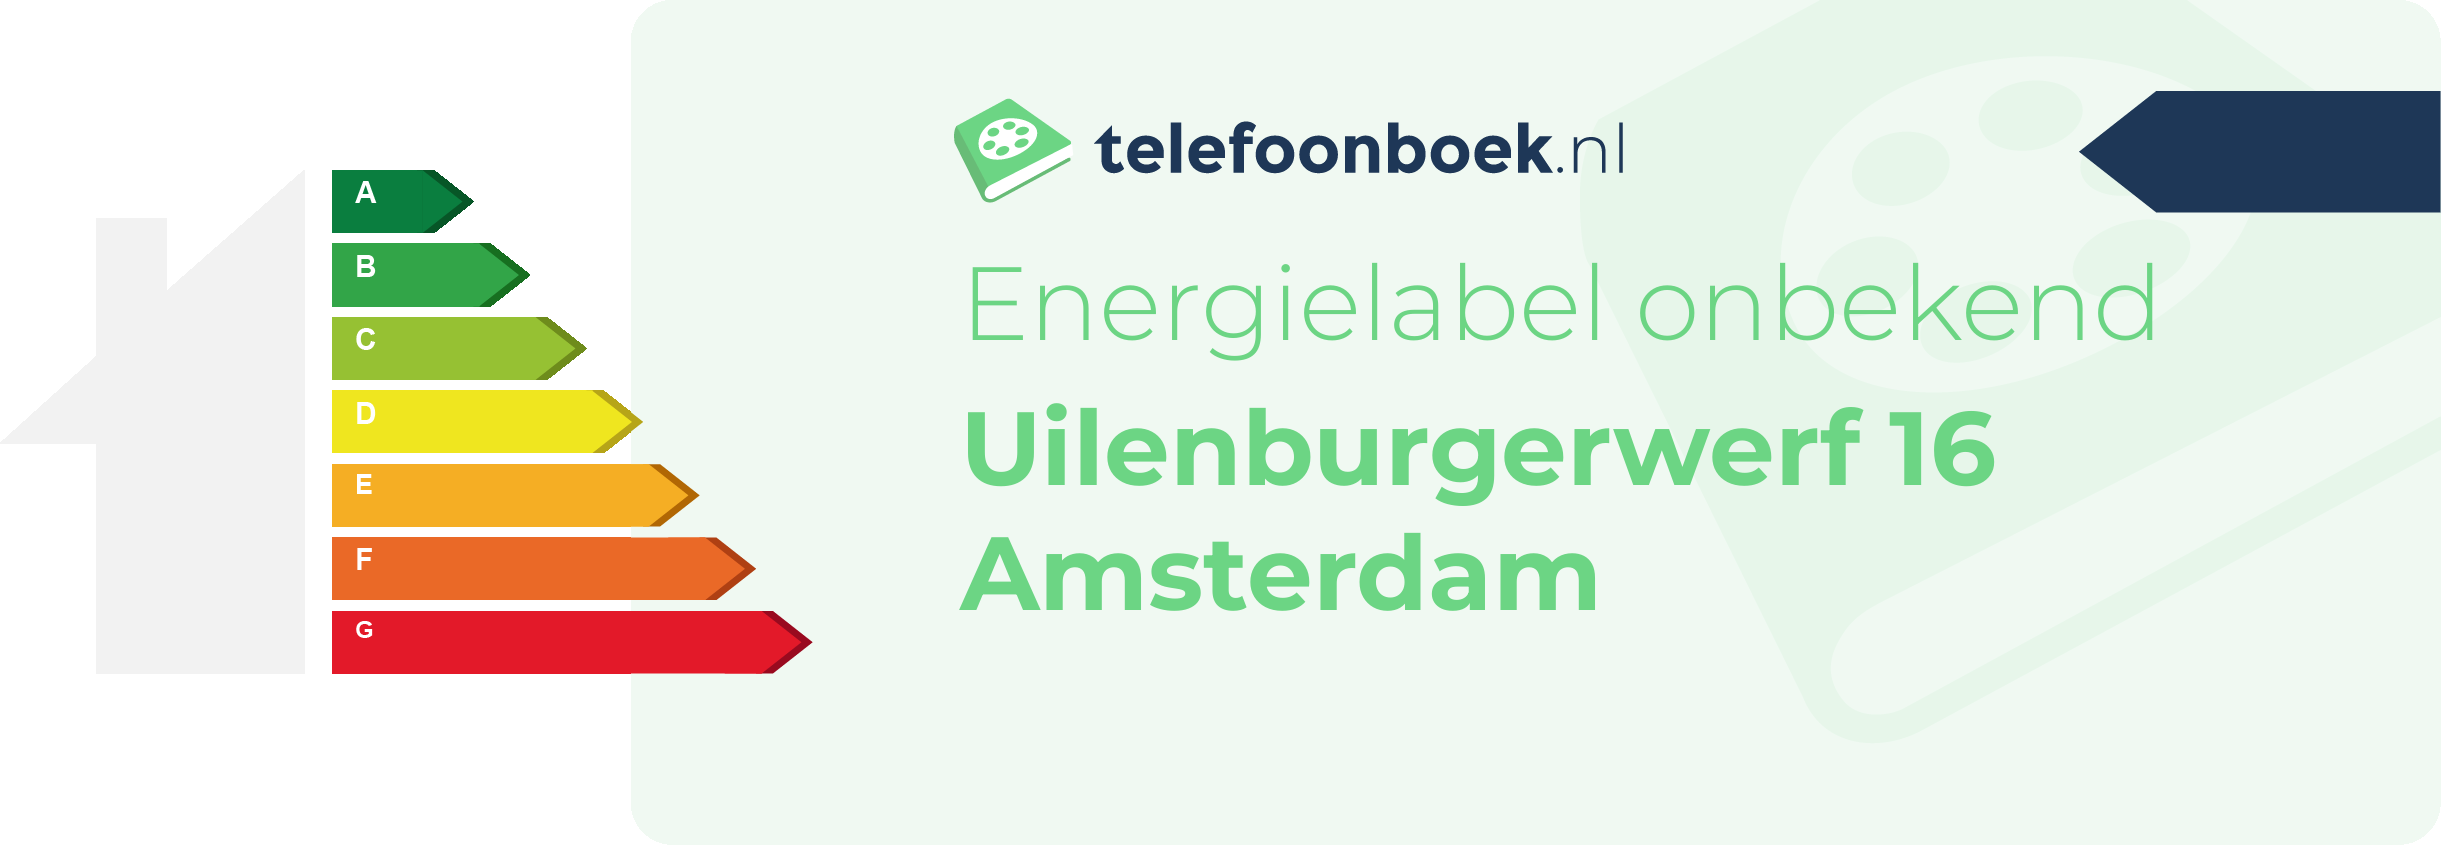 Energielabel Uilenburgerwerf 16 Amsterdam